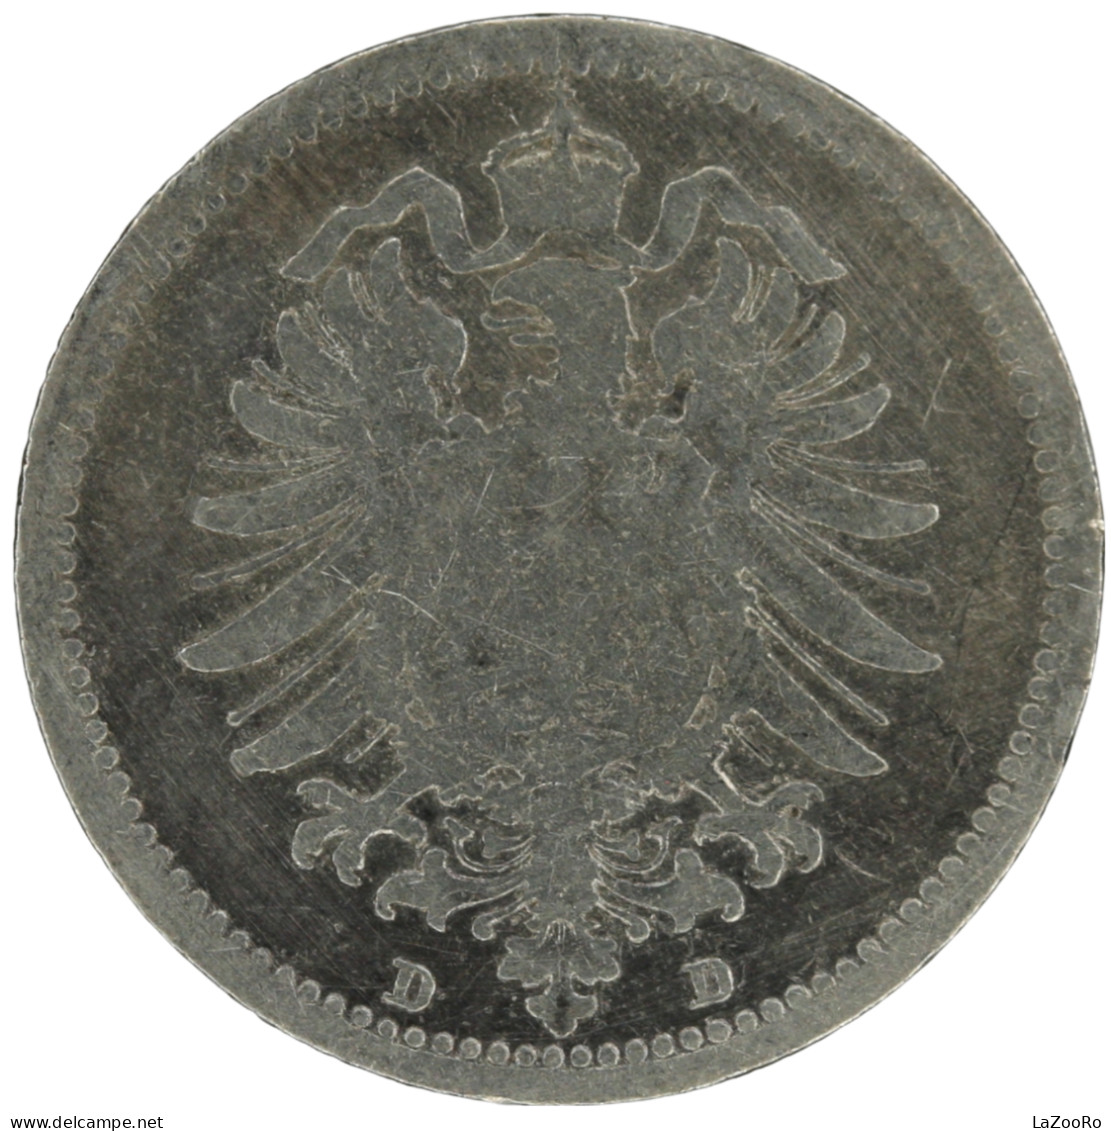 LaZooRo: Germany 20 Pfennig 1876 D VF - Silver - 20 Pfennig